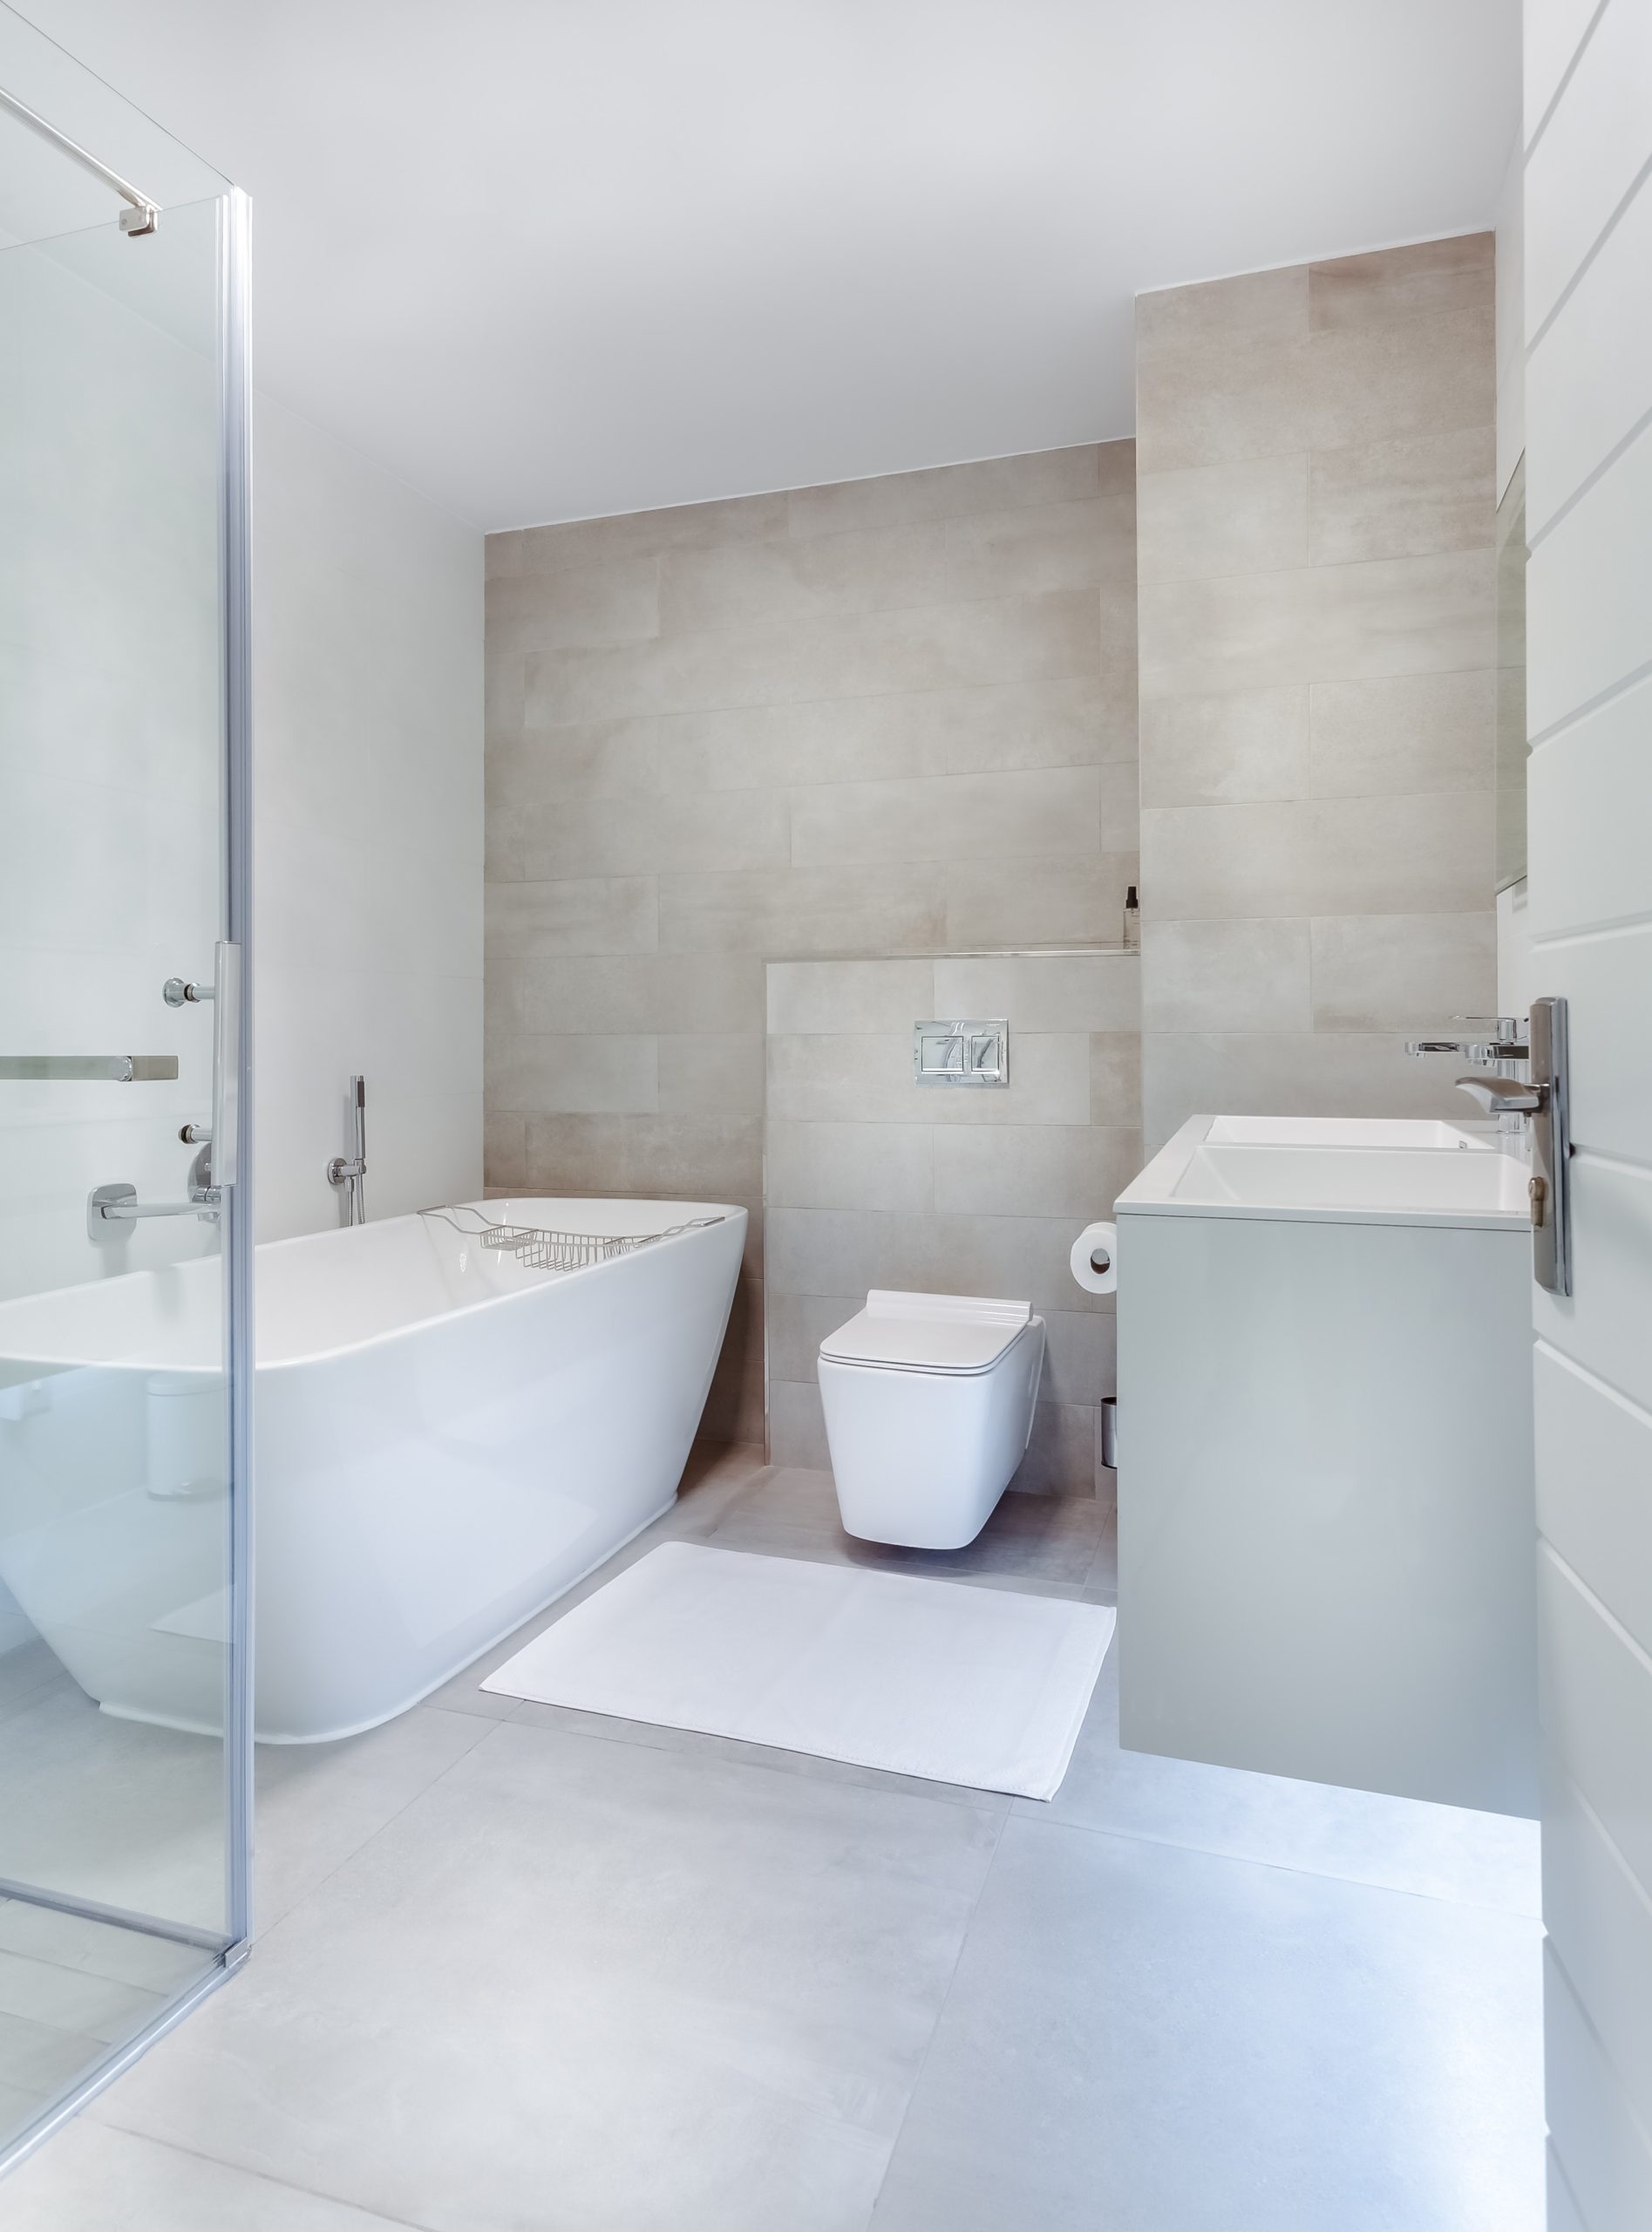 Luxury Bathroom And Kitchen Renovations Luxury Bathroom Renovations in Sydney